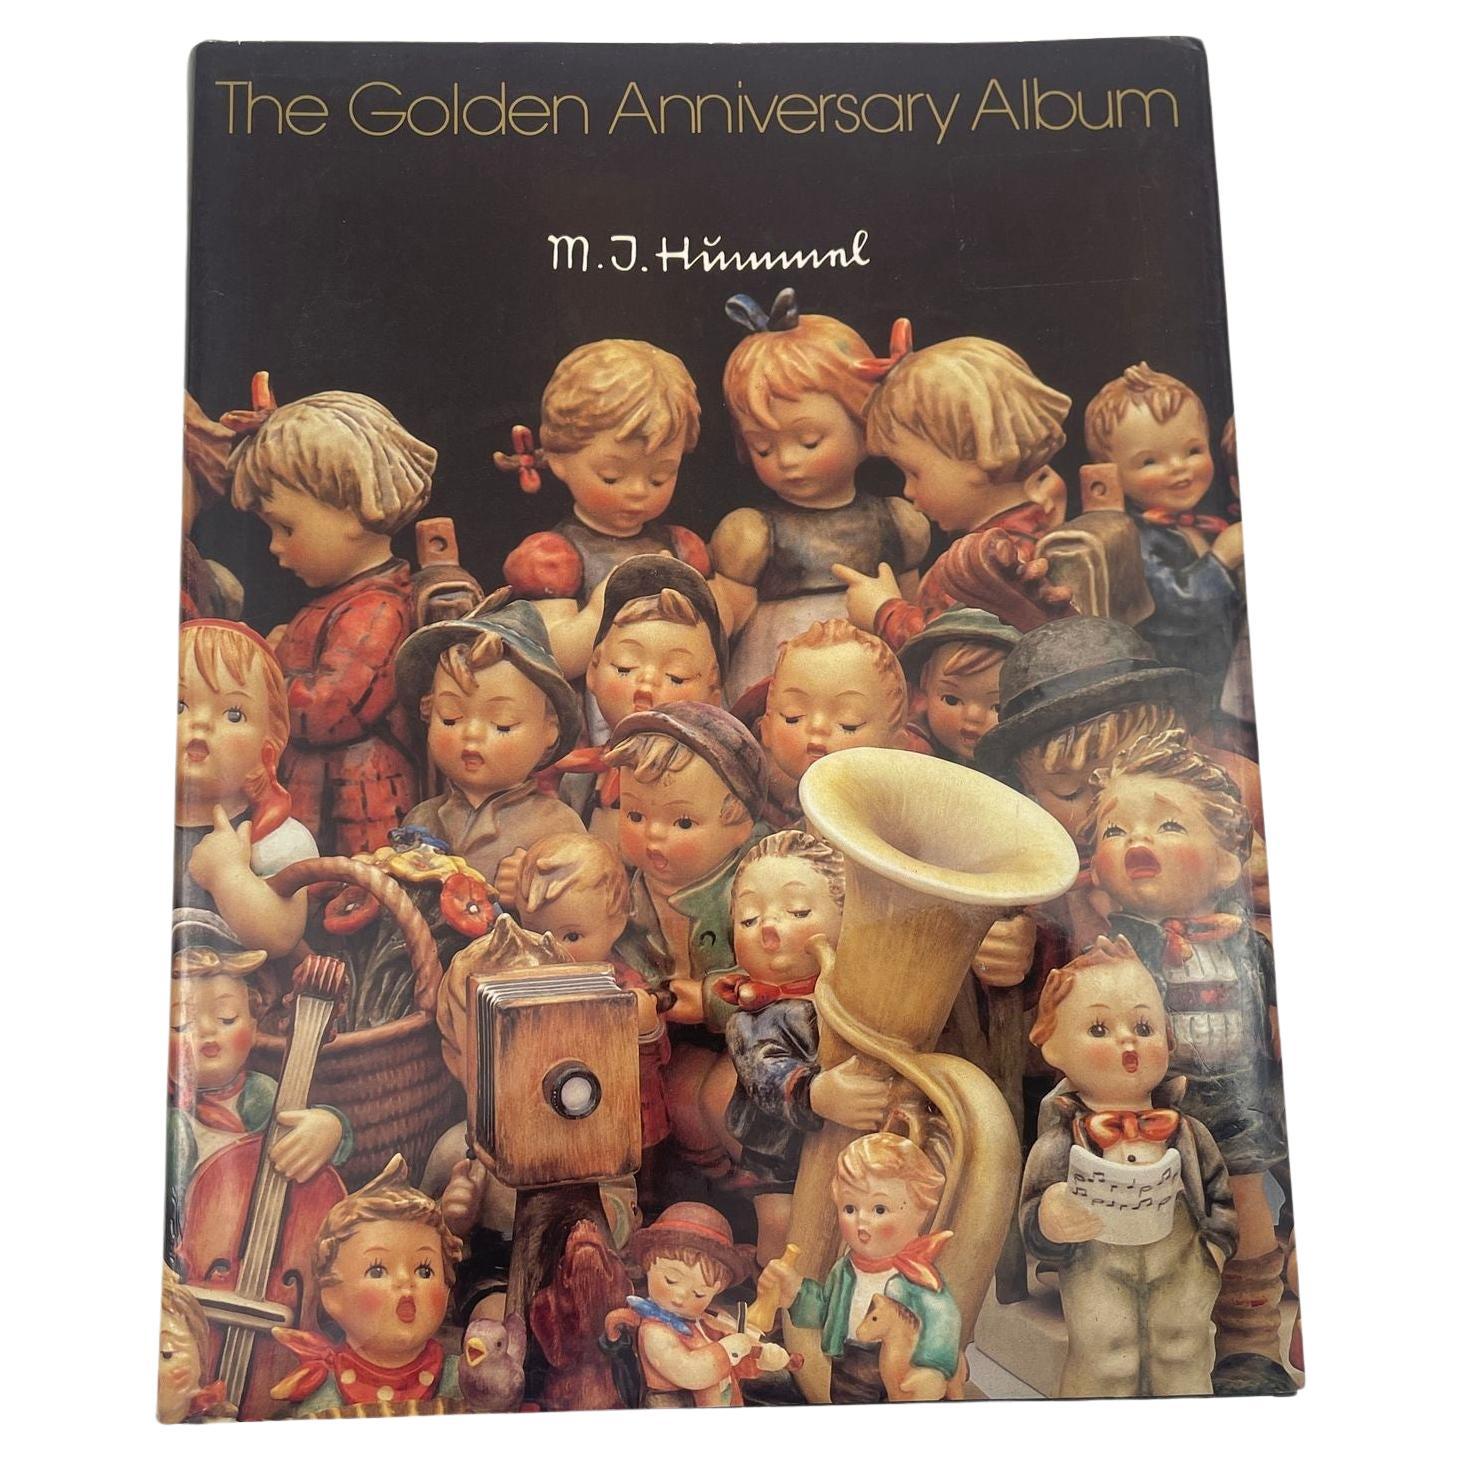 M.I. Hummel The Golden Anniversary Album Hardcover 1st Ed. 1984 For Sale